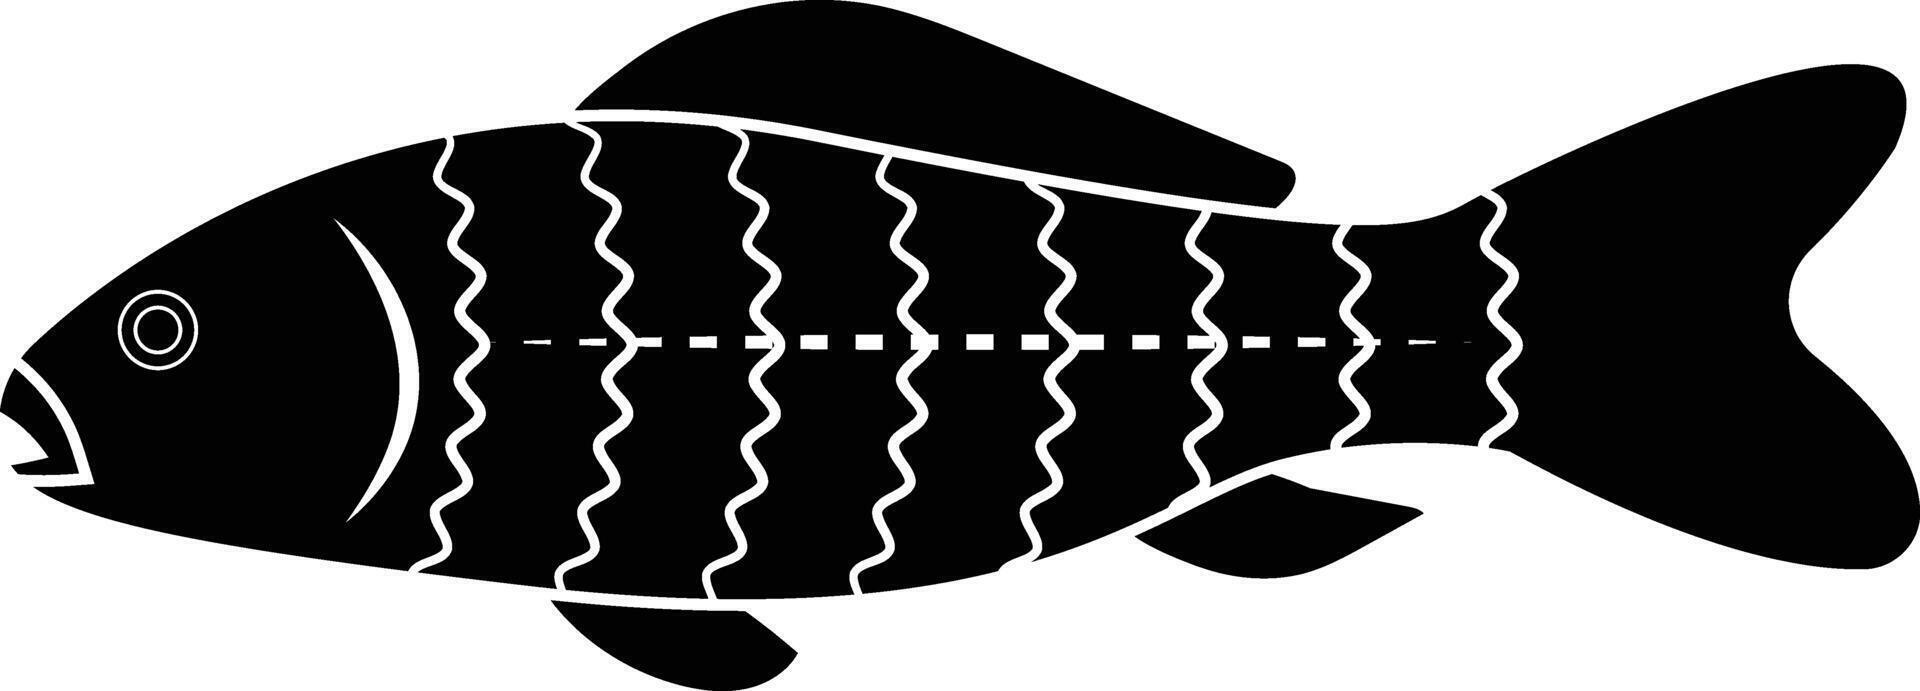 Fish Diagram for Education Purposes vector